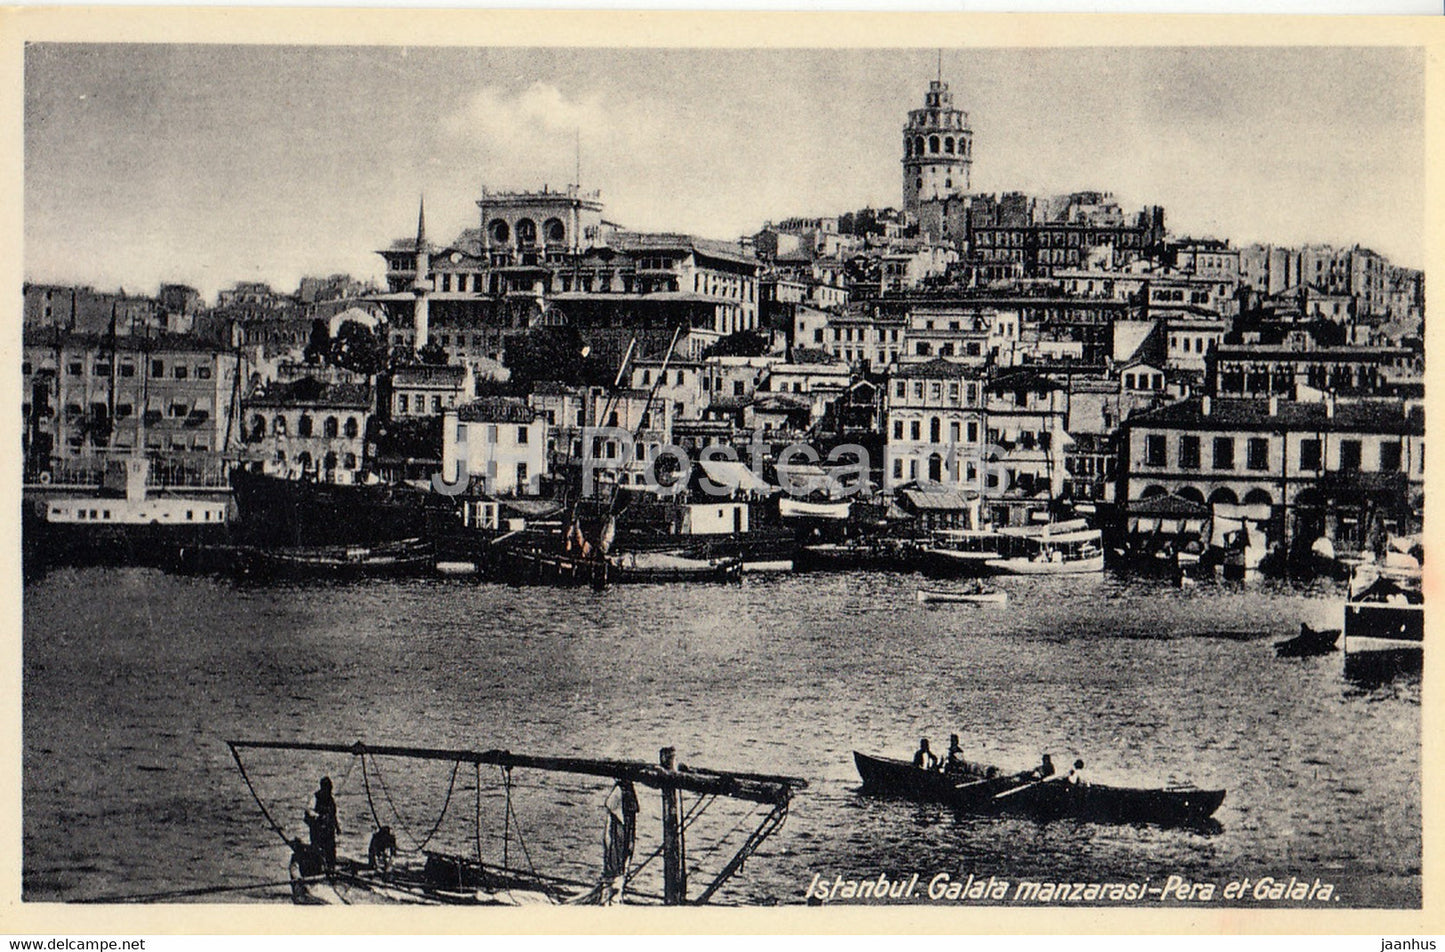 Istanbul - Pera et Galata - boat - 1 - old postcard - Turkey - unused - JH Postcards